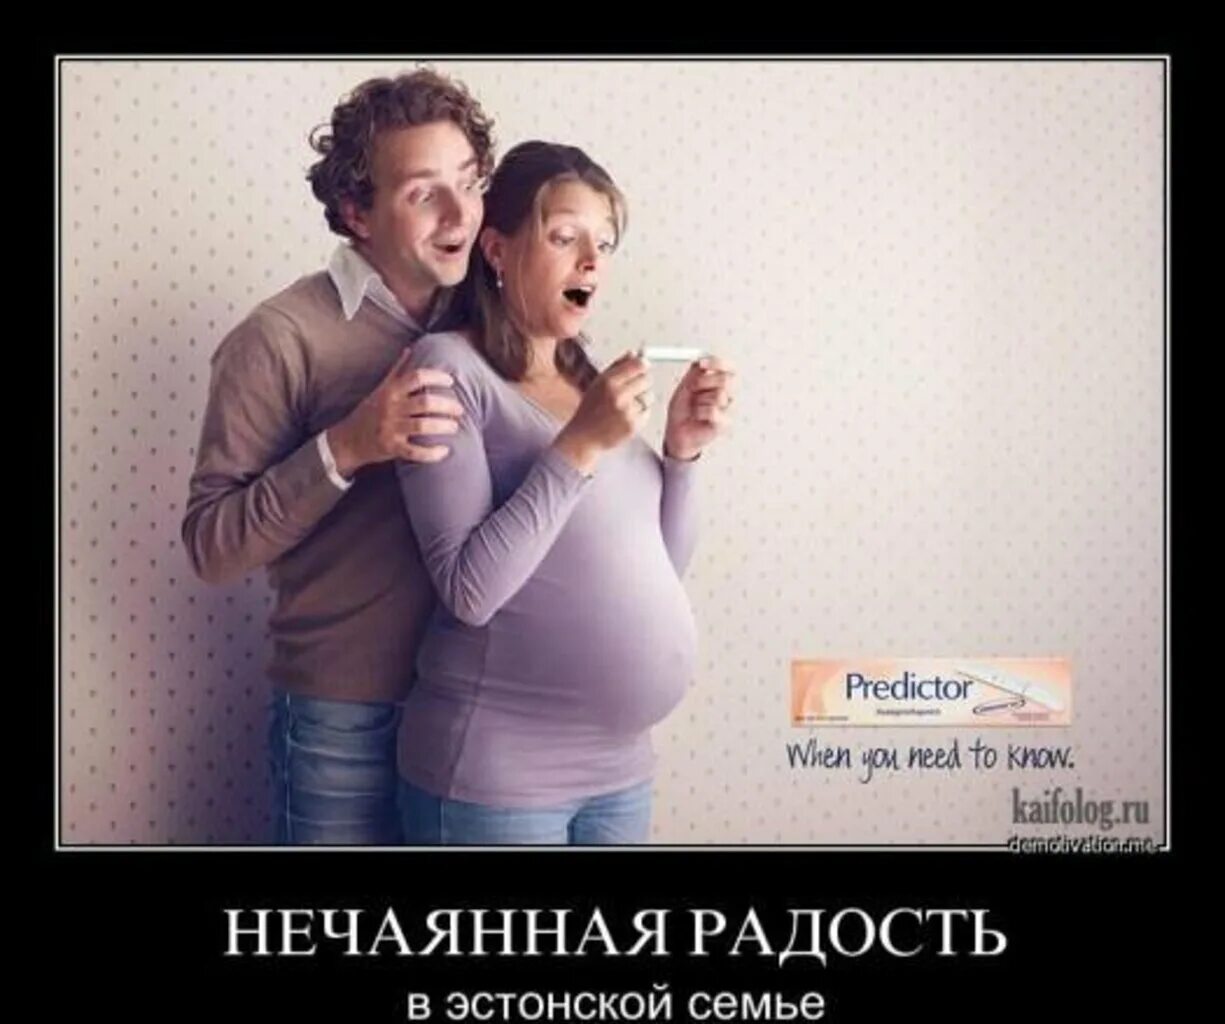 Шутки про беременность. Тест на беременность шутка. Юмор. Смешная реклама теста на беременность.